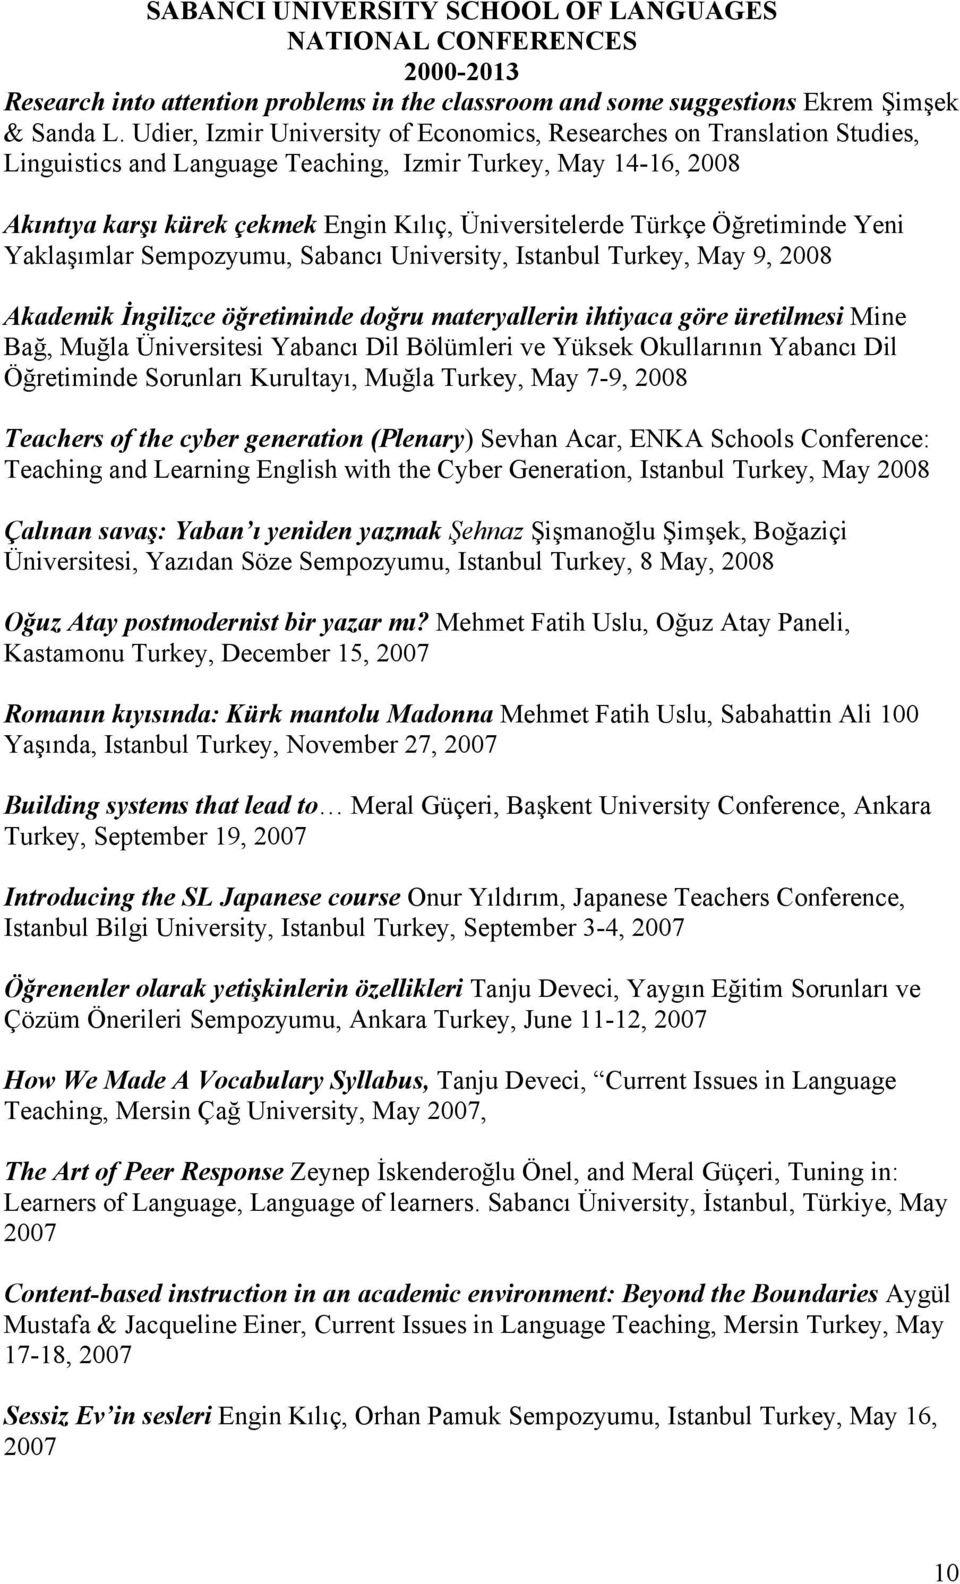 Türkçe Öğretiminde Yeni Yaklaşımlar Sempozyumu, Sabancı University, Istanbul Turkey, May 9, 2008 Akademik İngilizce öğretiminde doğru materyallerin ihtiyaca göre üretilmesi Mine Bağ, Muğla